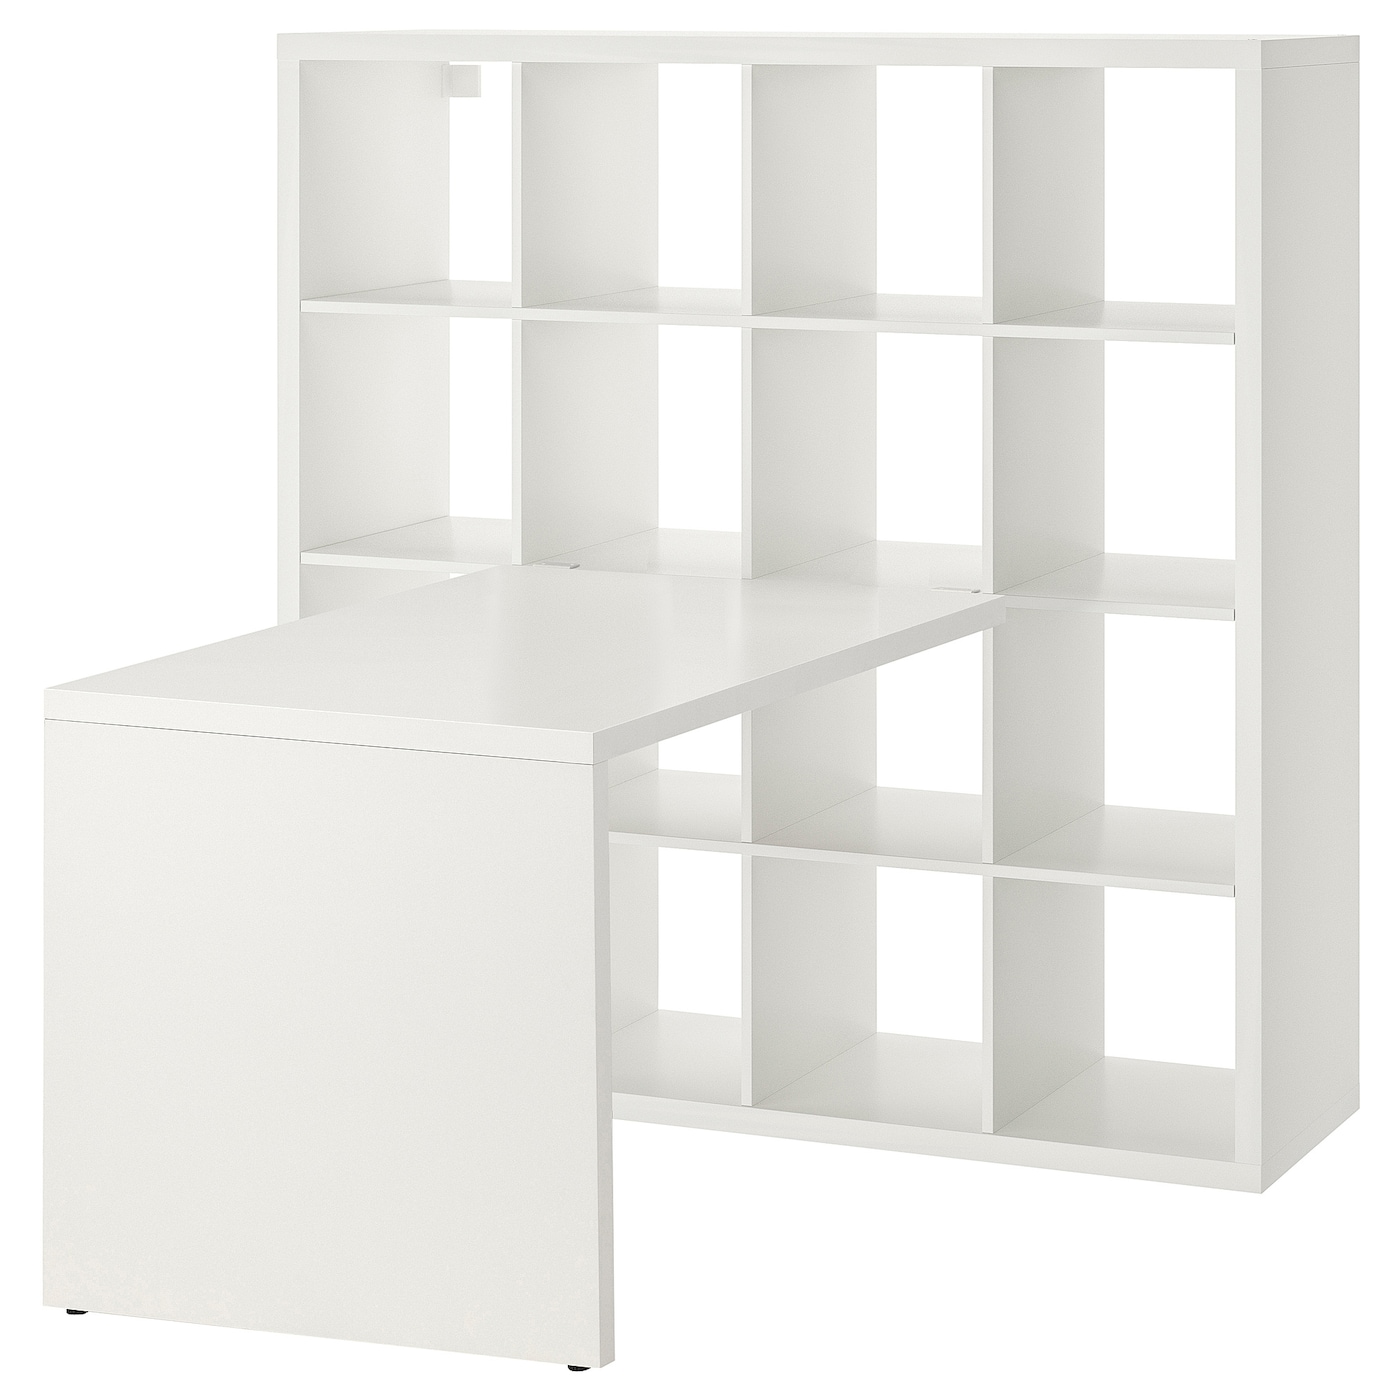 Письменный стол и стеллаж - IKEA KALLAX, 147x154x147 см, белый, КАЛЛАКС ИКЕА